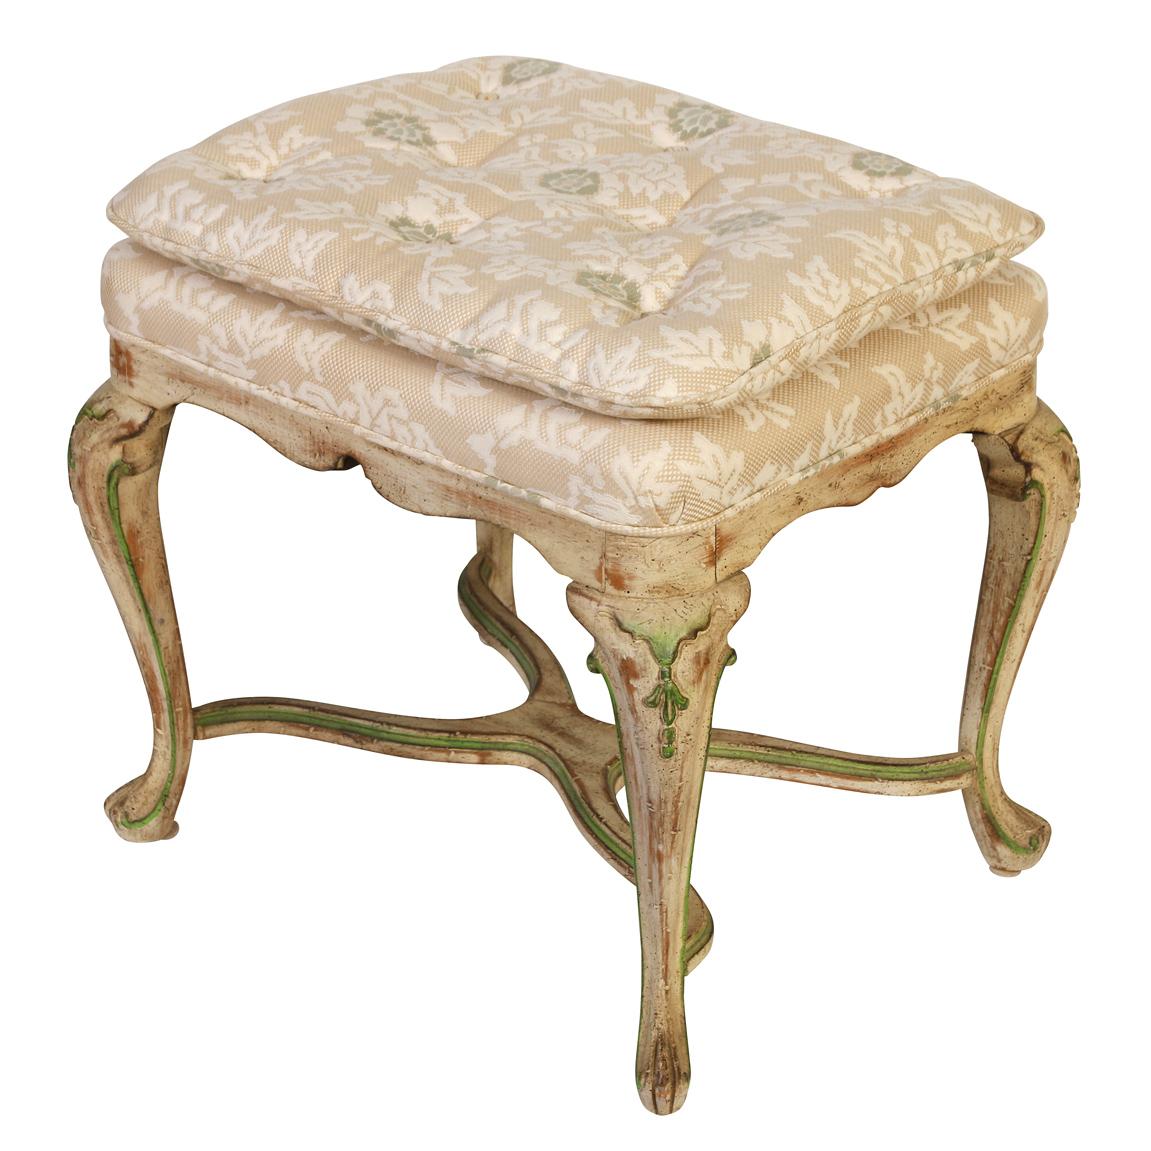 Un petit banc vintage de style Louis XV peint et tapissé.  Les gracieux pieds cabriole du banc sont peints en crème vieillie avec des accents verts et se rejoignent dans un châssis en X incurvé.  L'assise est recouverte d'un tissu neutre et moelleux